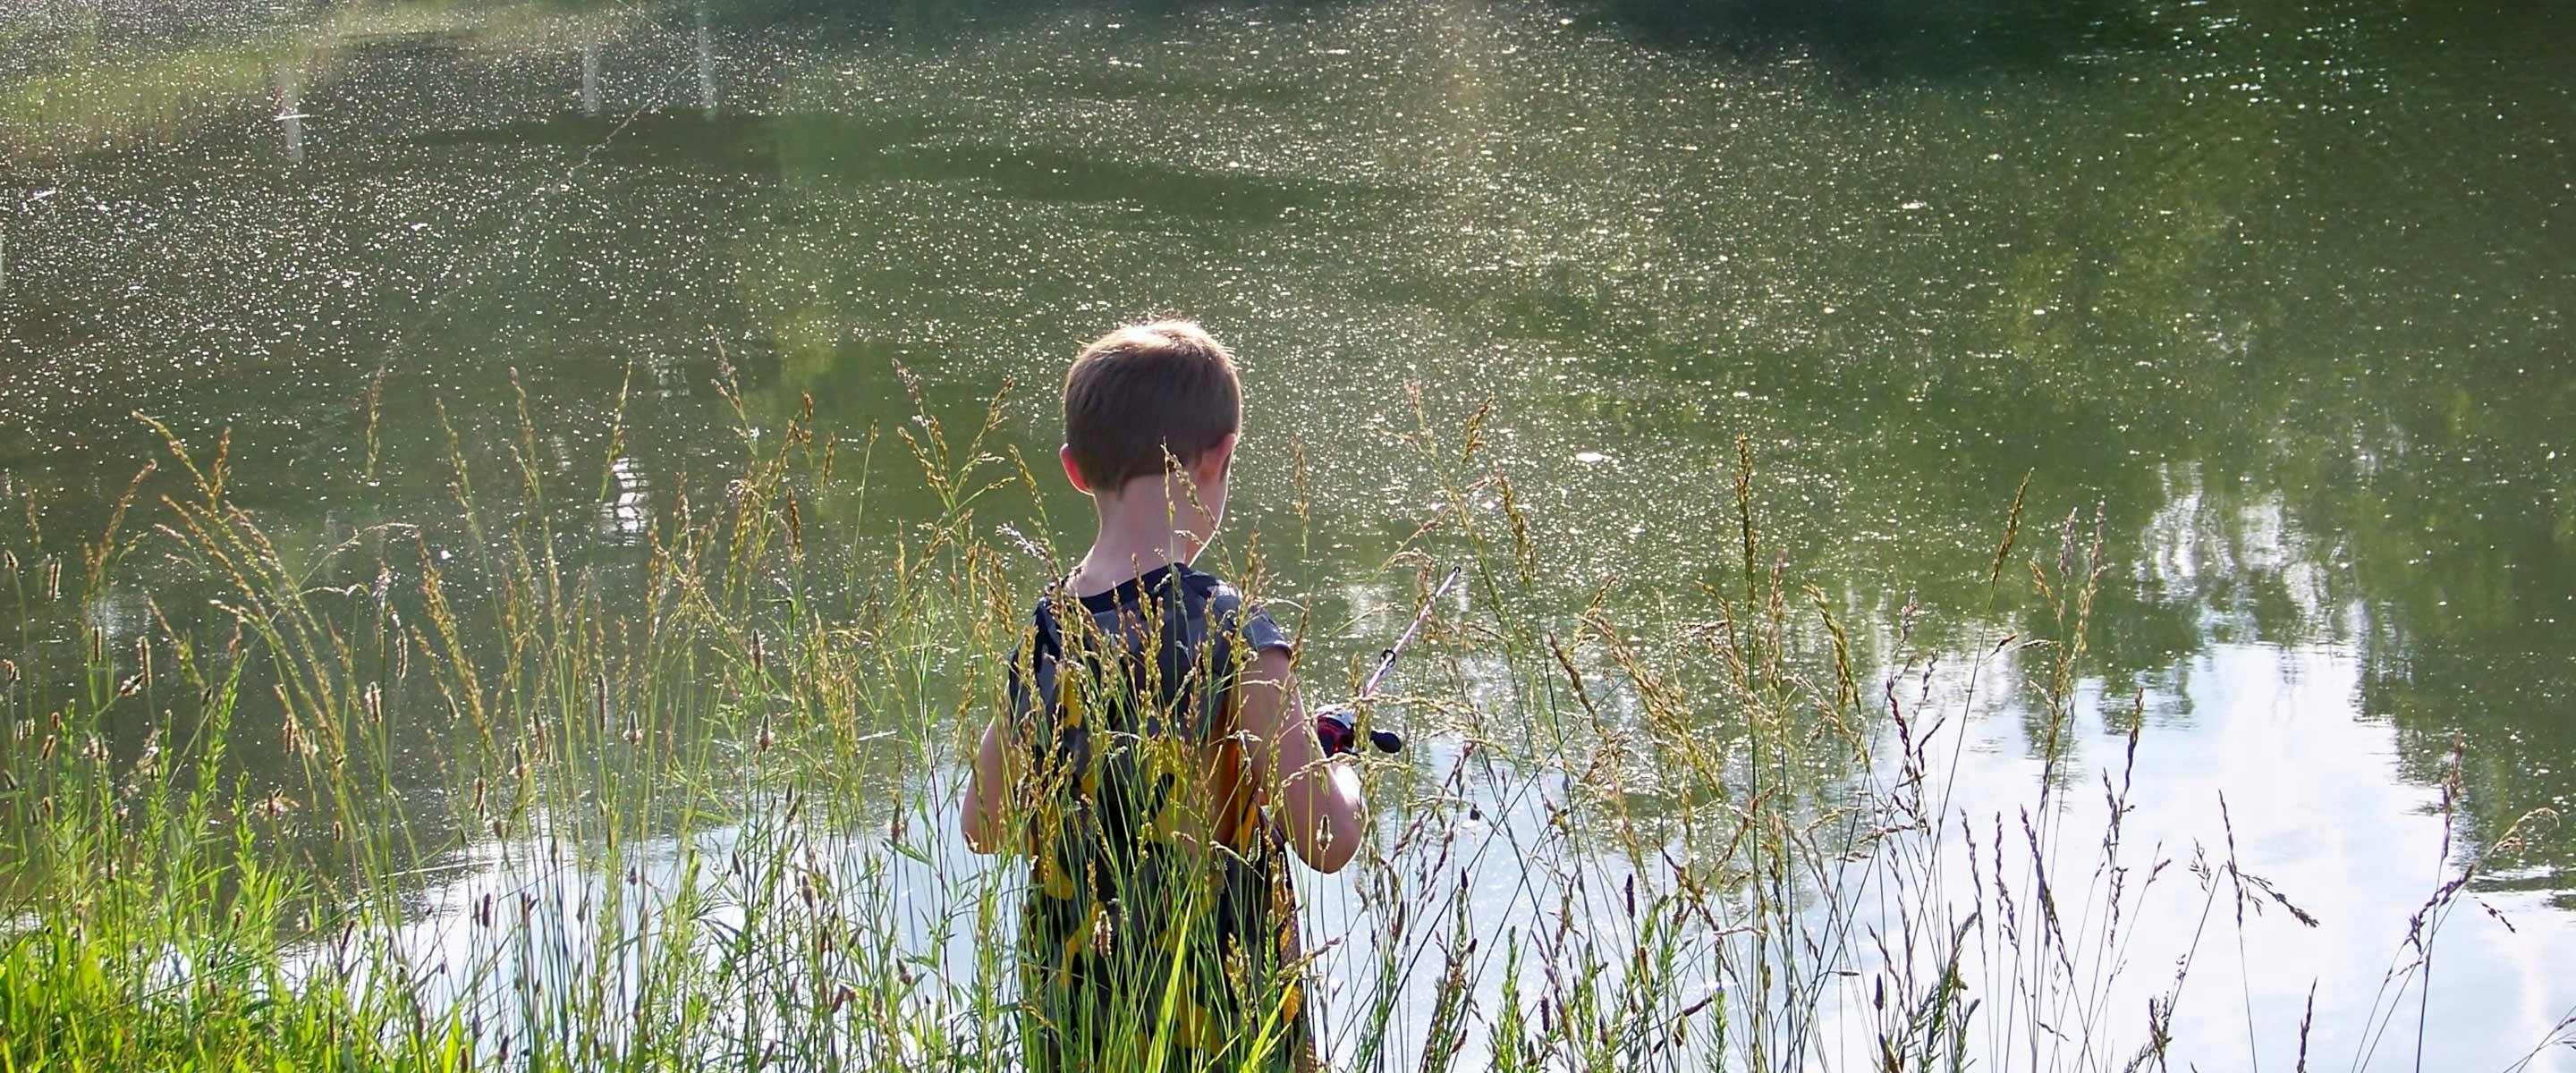 boy fishing from shore